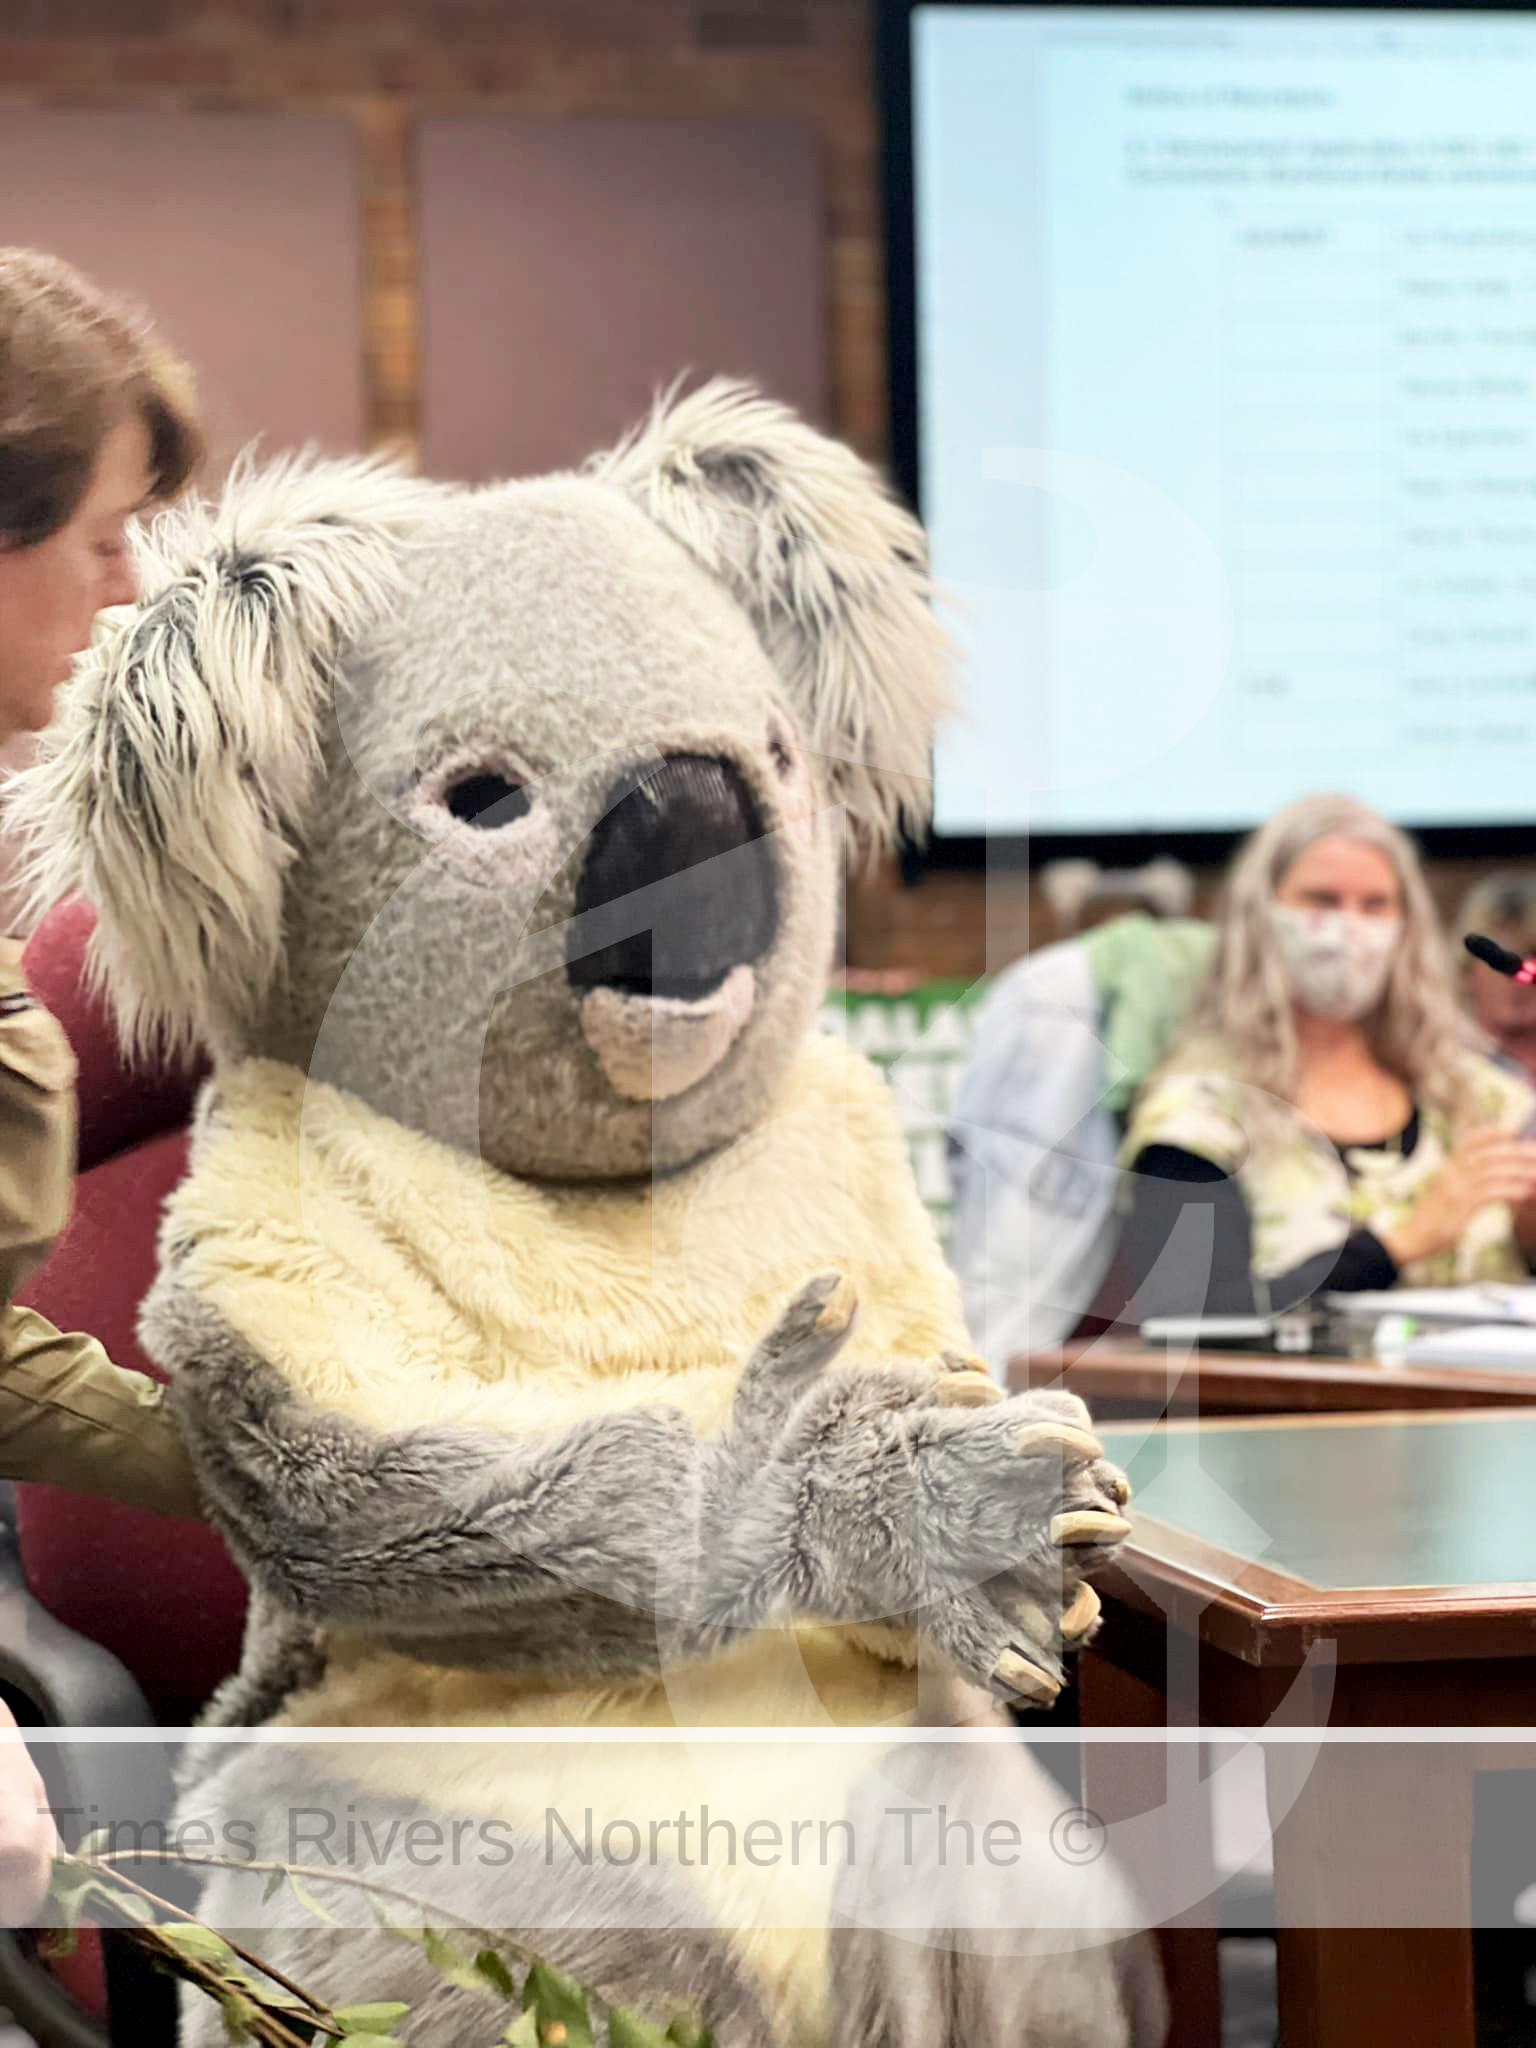 The DA decision for Koalas stands!